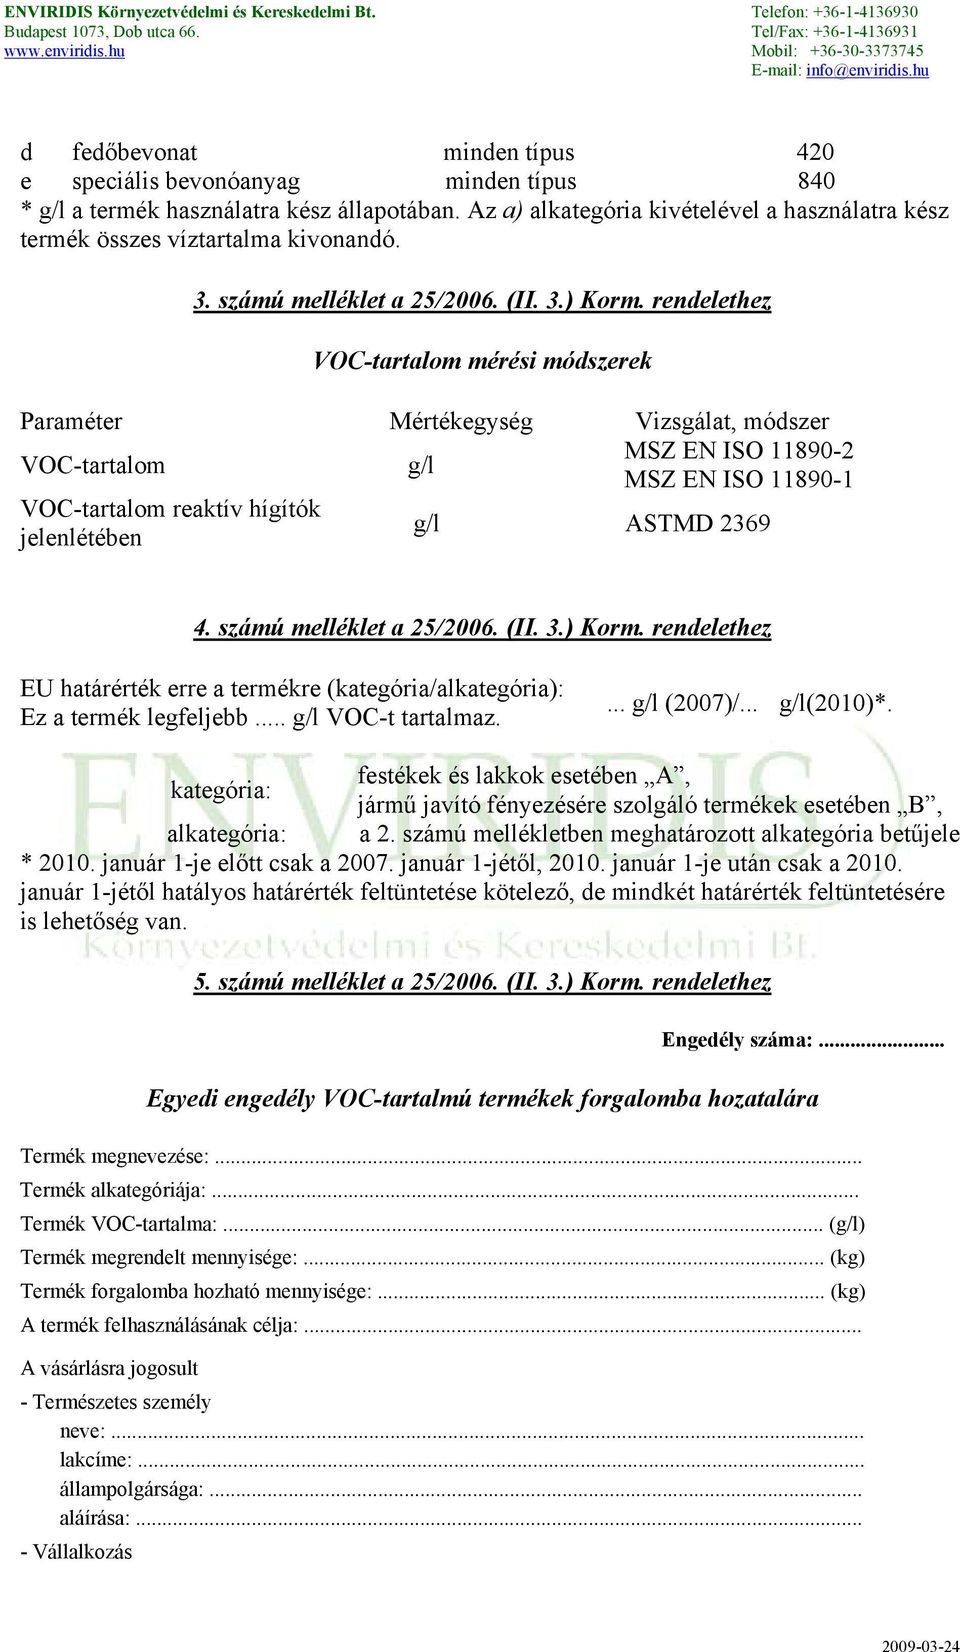 rendelethez VOC-tartalom mérési módszerek Paraméter Mértékegység Vizsgálat, módszer VOC-tartalom g/l MSZ EN ISO 11890-2 MSZ EN ISO 11890-1 VOC-tartalom reaktív hígítók jelenlétében g/l ASTMD 2369 4.